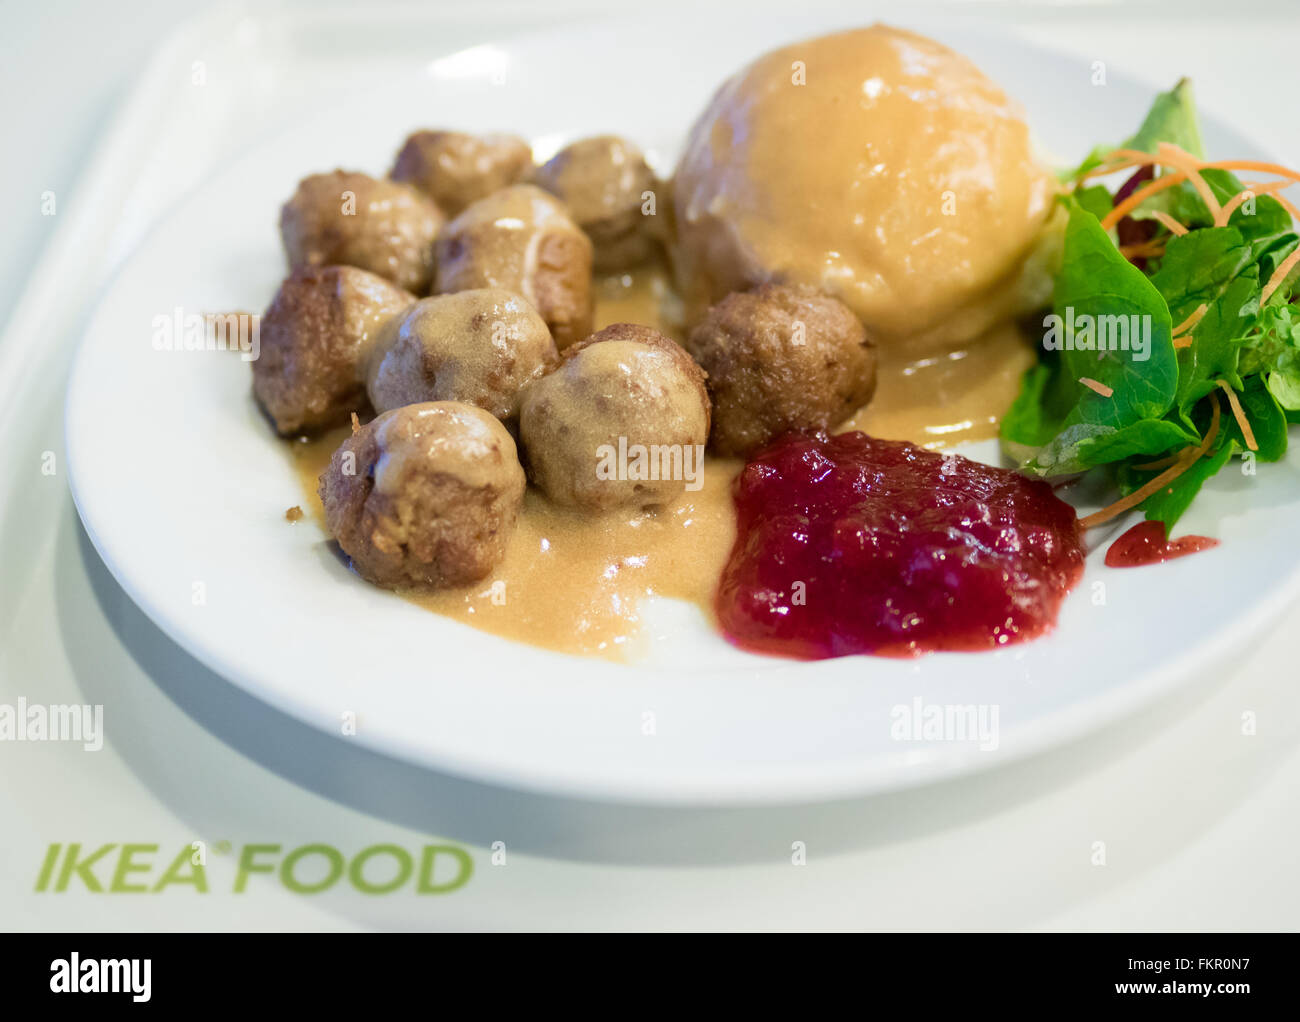 Une assiette de boulettes IKEA, purée de pommes de terre, sauce à la crème, salade verte et sauce aux airelles. Banque D'Images